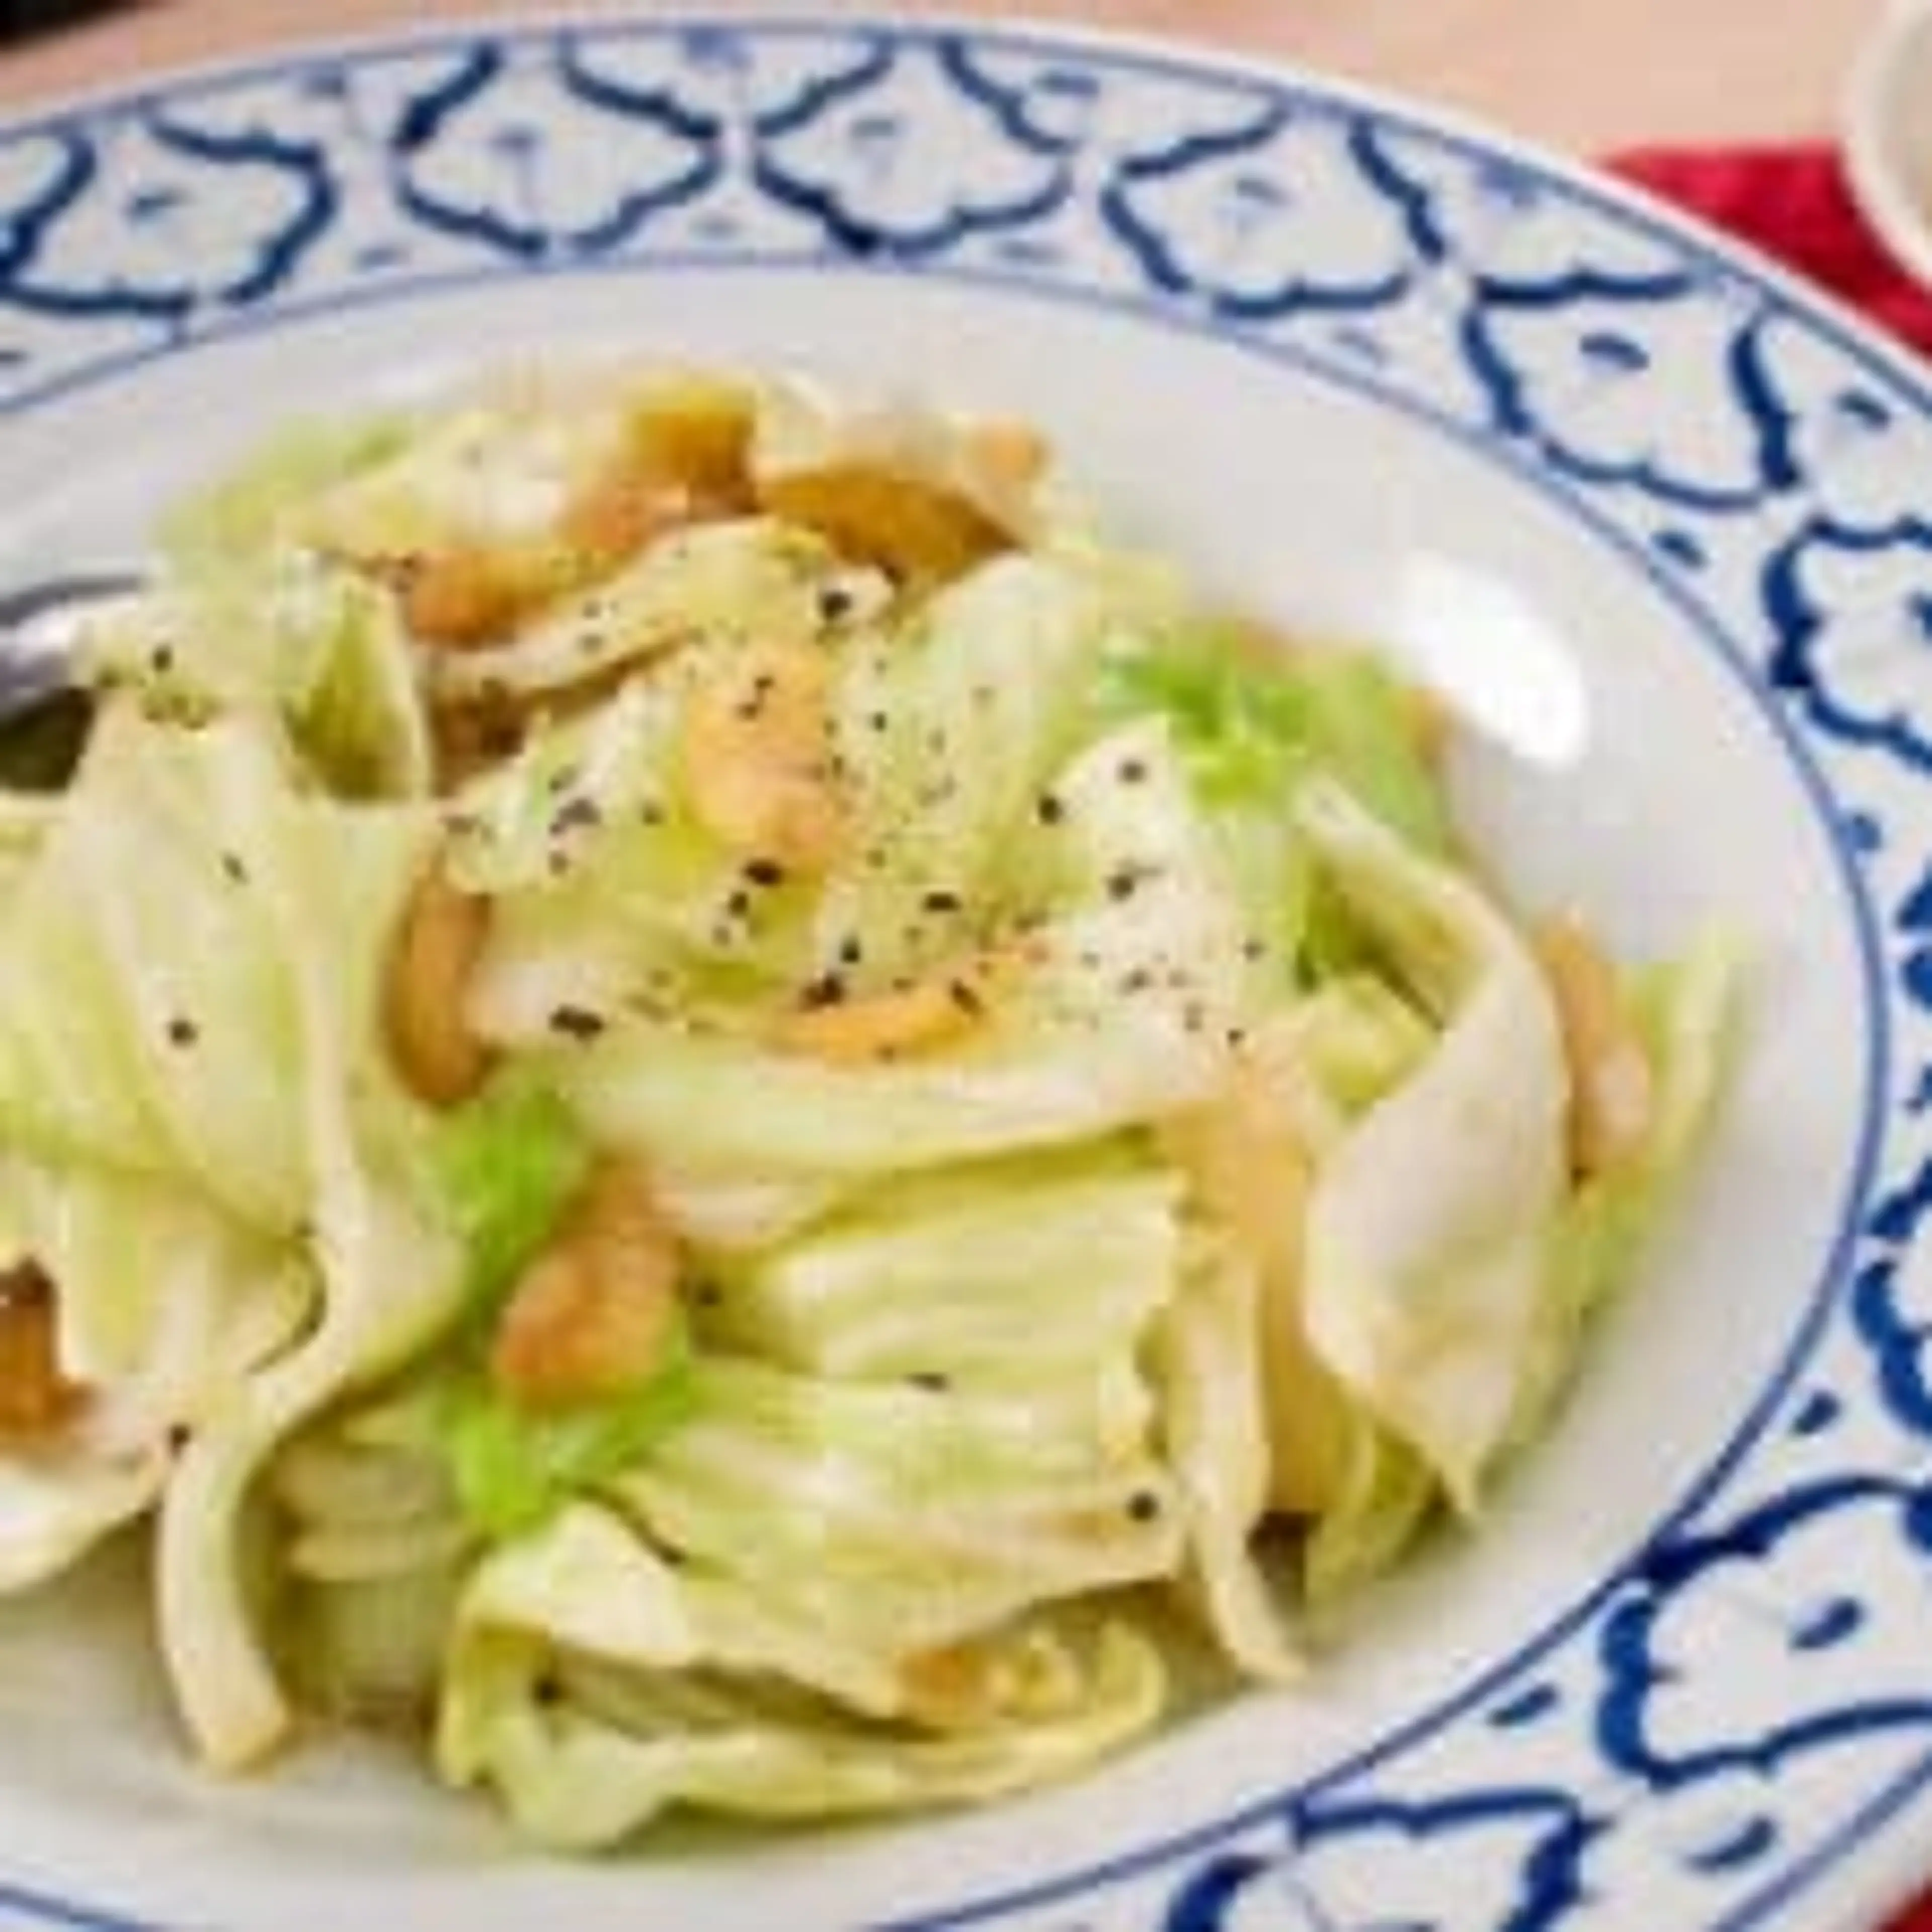 Garlicky Cabbage & Fish Sauce Side Dish กะหล่ำปลีผัดนำ้ปลา